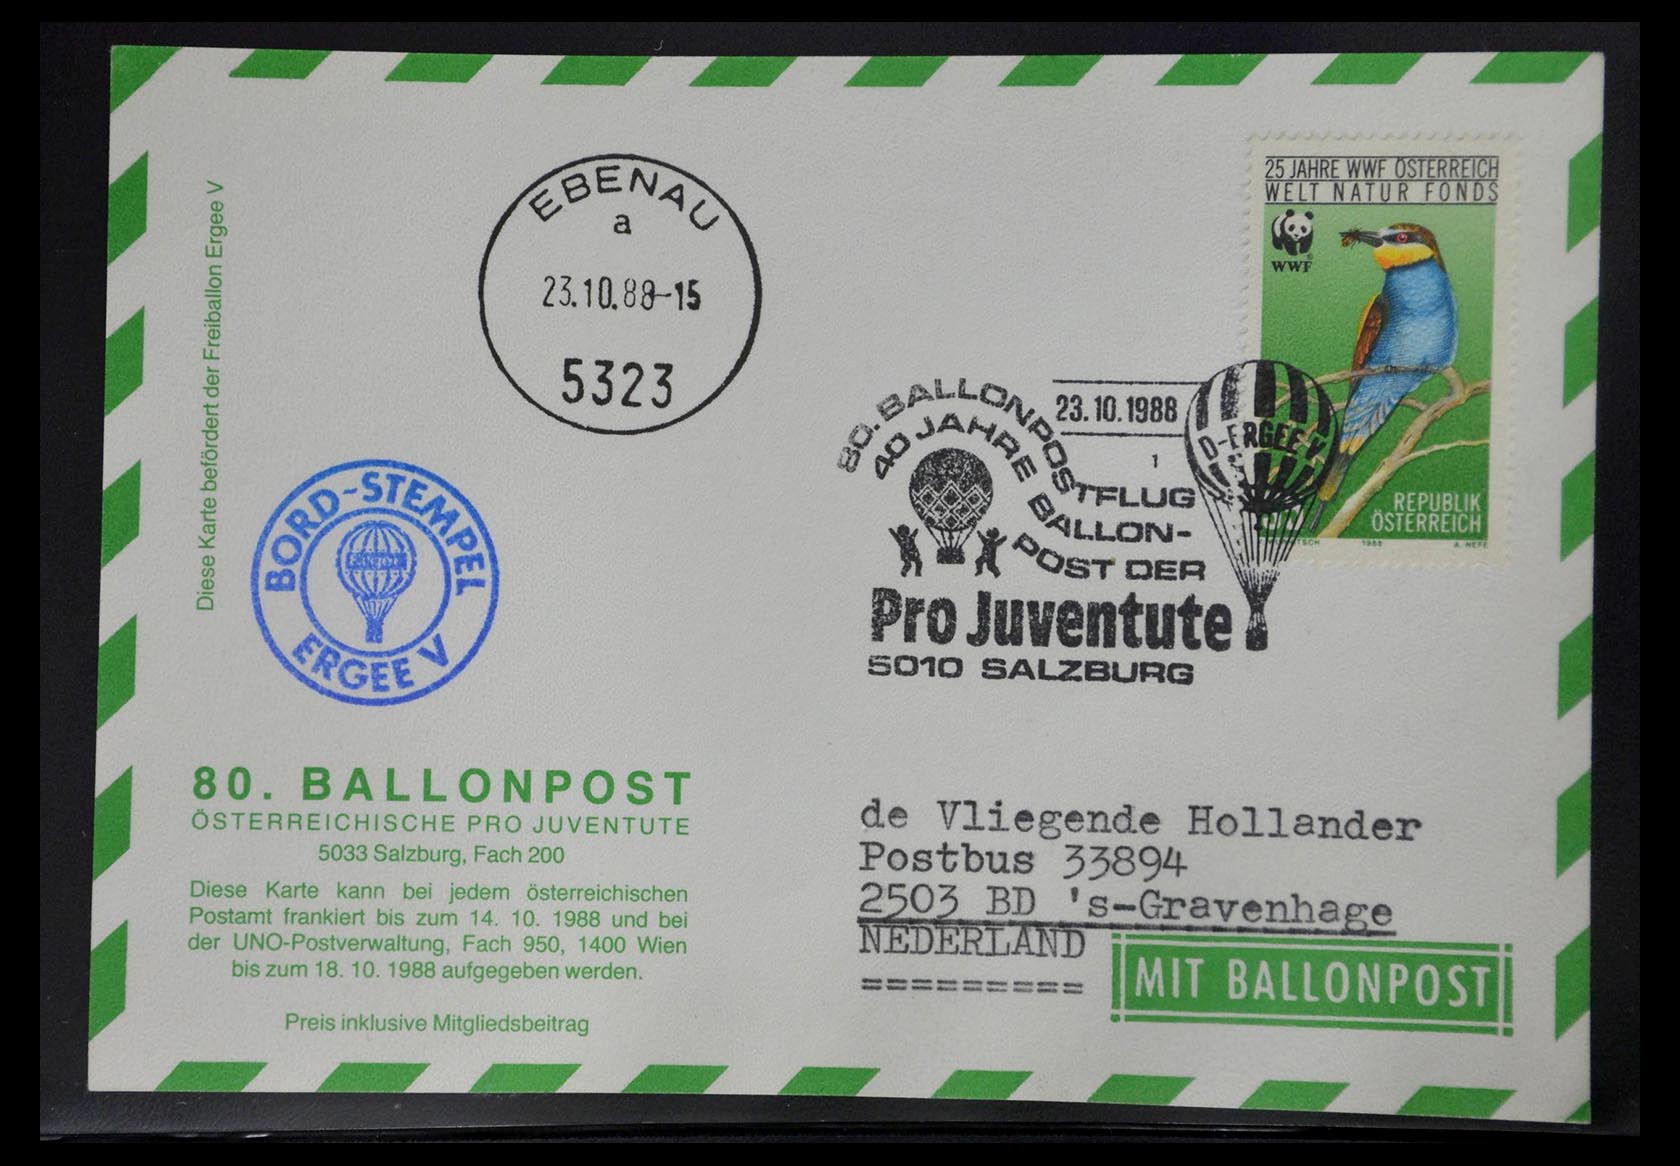 28889 019 - 28889 Ballonpost 1927-2001.